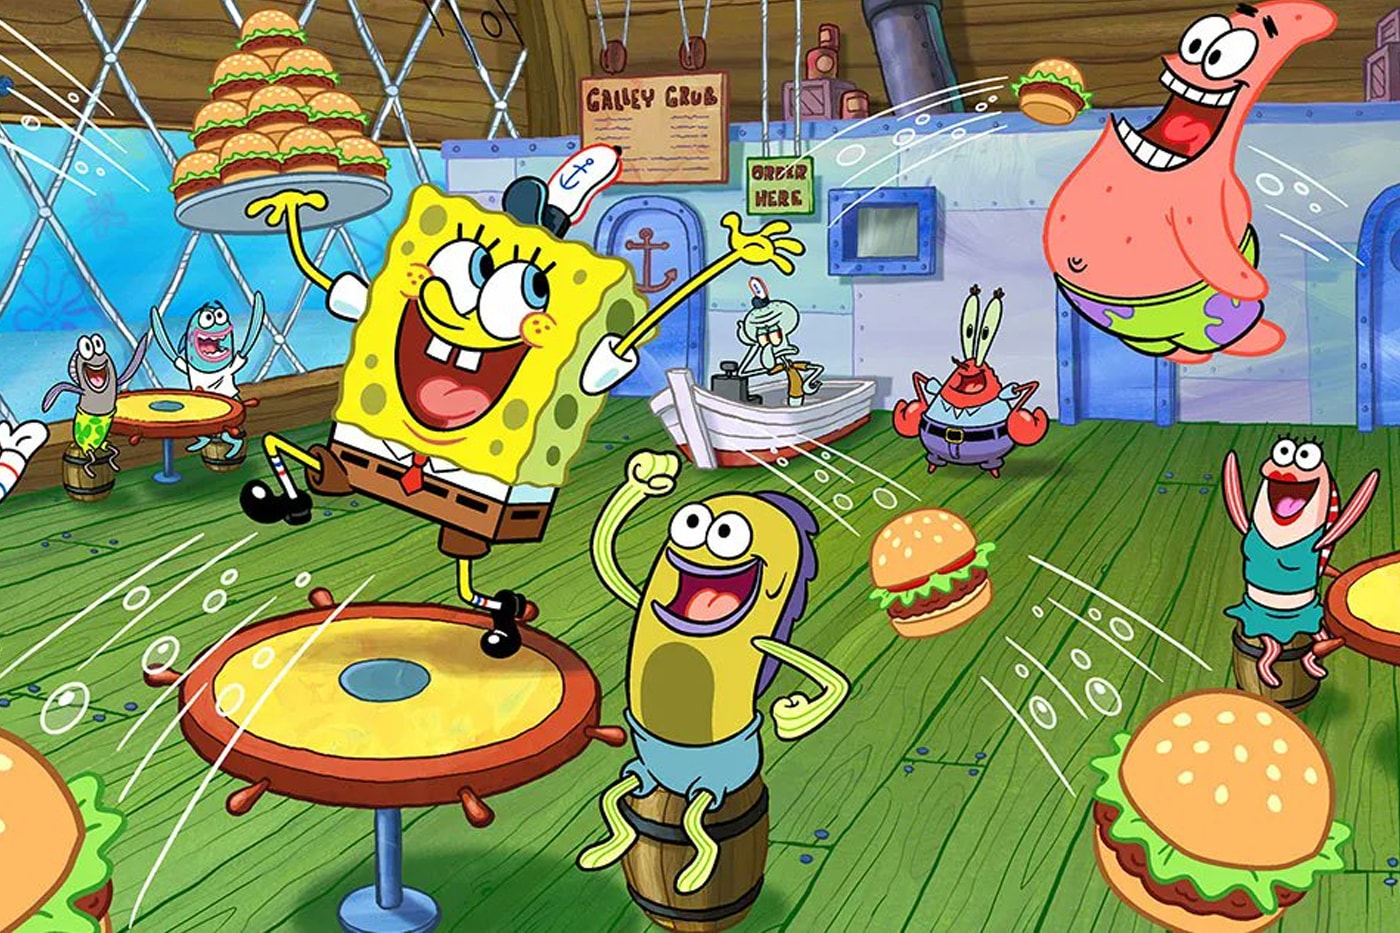 nickelodeon SpongeBob SquarePants Restaurant opening sao paulo Brazil announcement